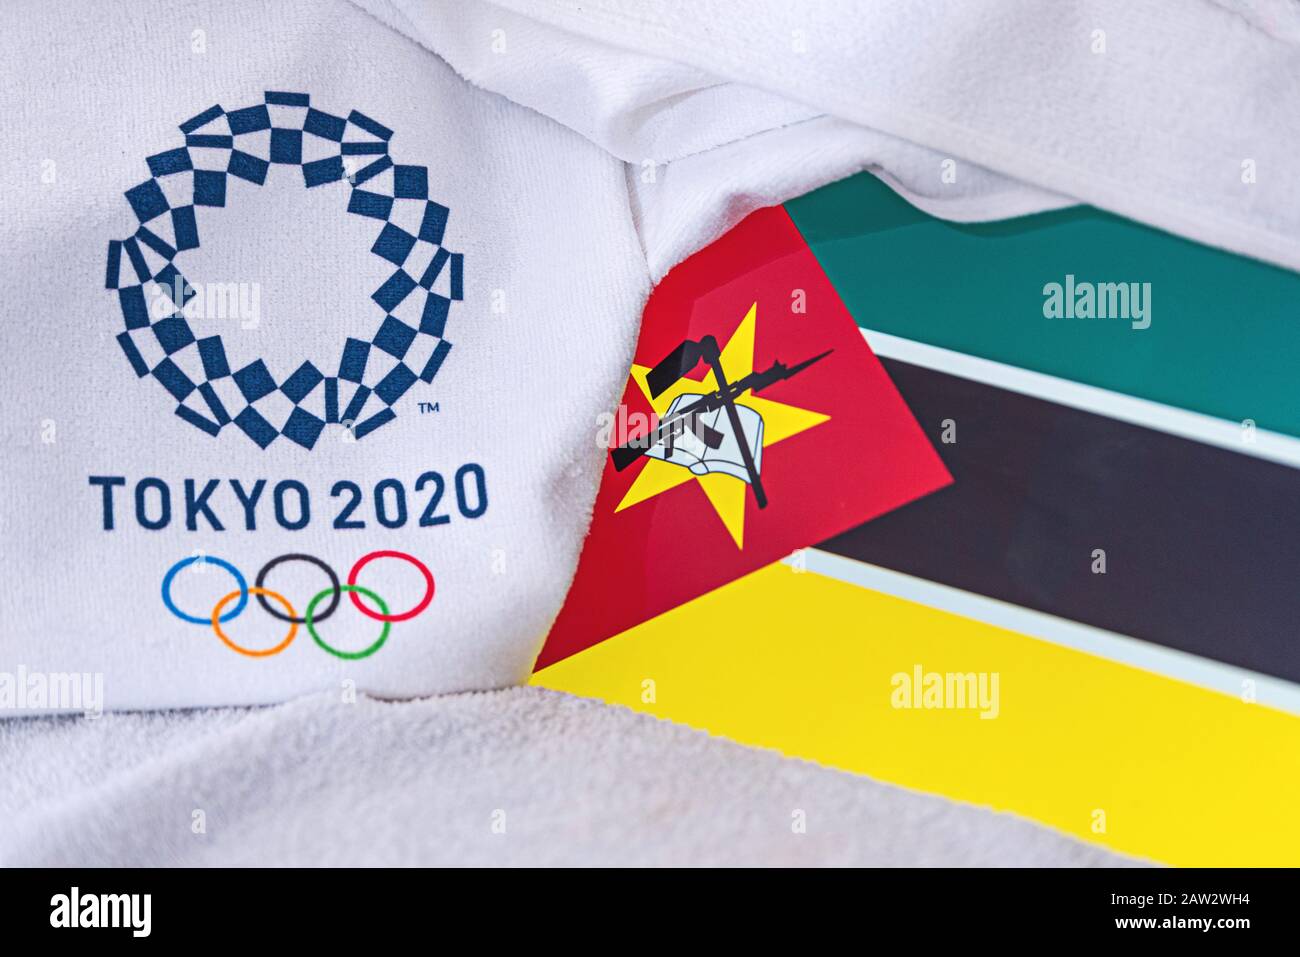 TOKIO, JAPÓN, FEBRERO. 4, 2020: Bandera nacional de Mozambique, logotipo oficial de los juegos olímpicos de verano en Tokio 2020. Fondo blanco Foto de stock